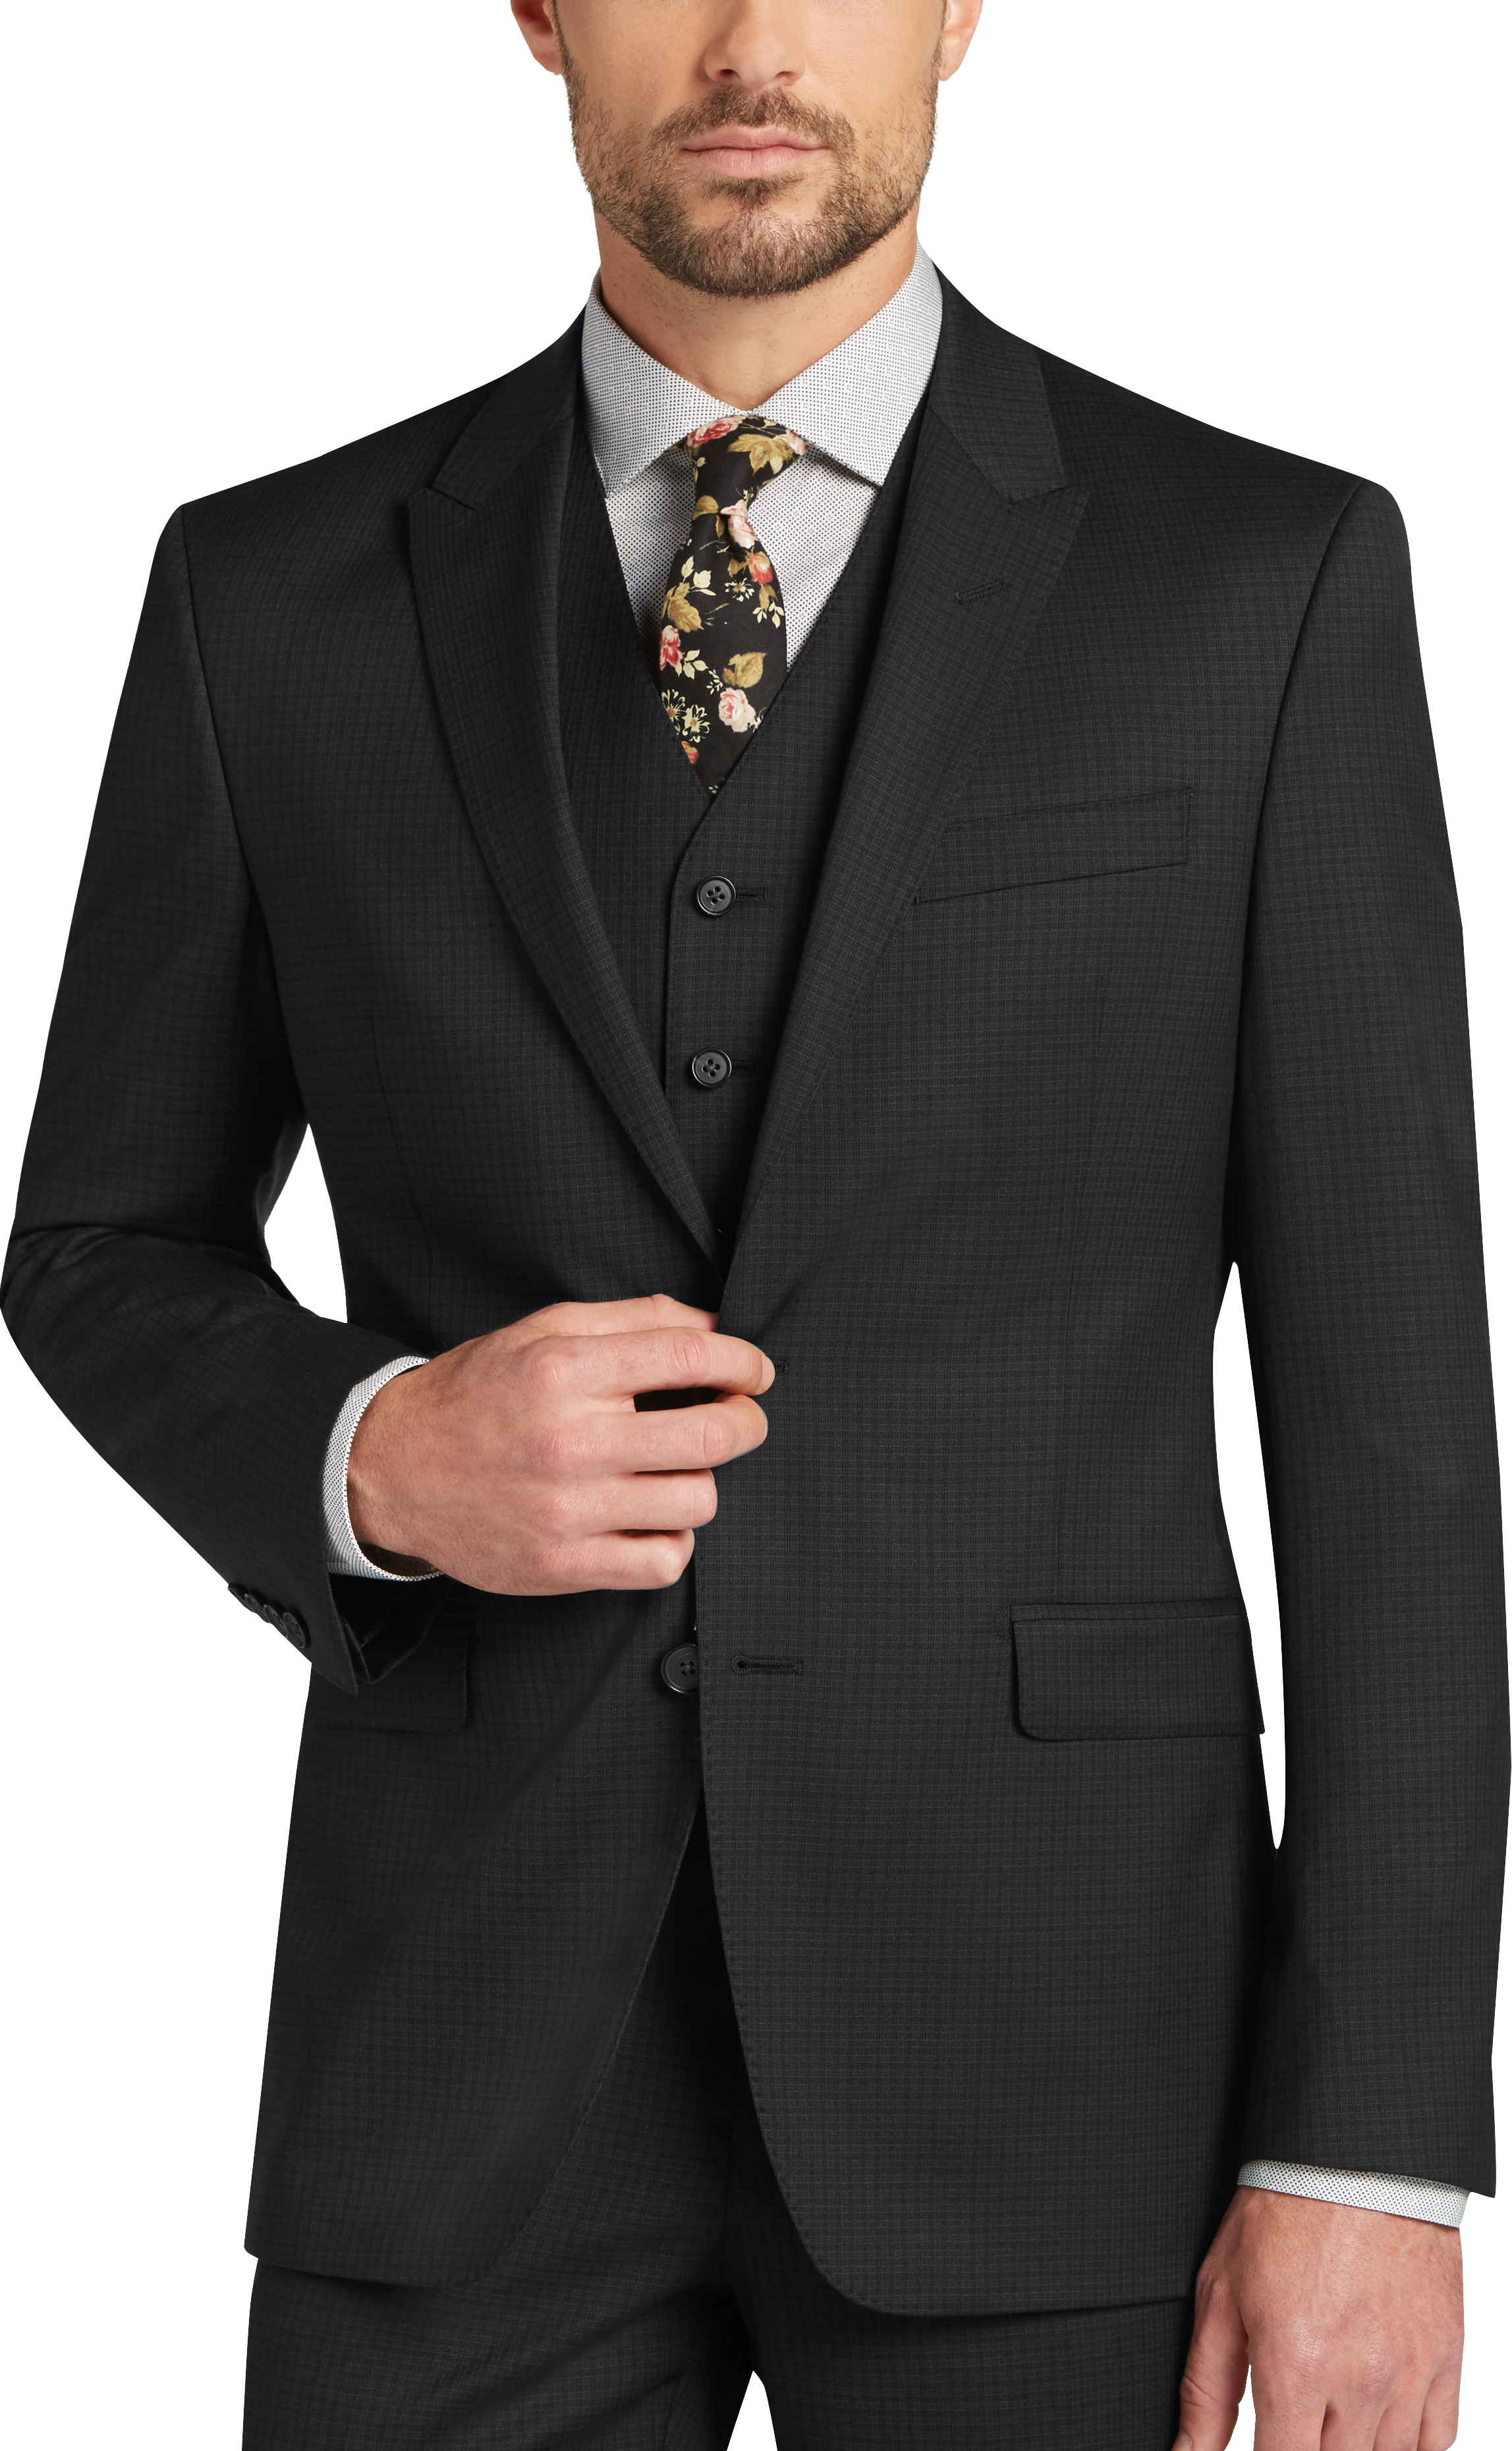 Men's 3 Piece Vested Suits, Suits with Vests | Men's Wearhouse